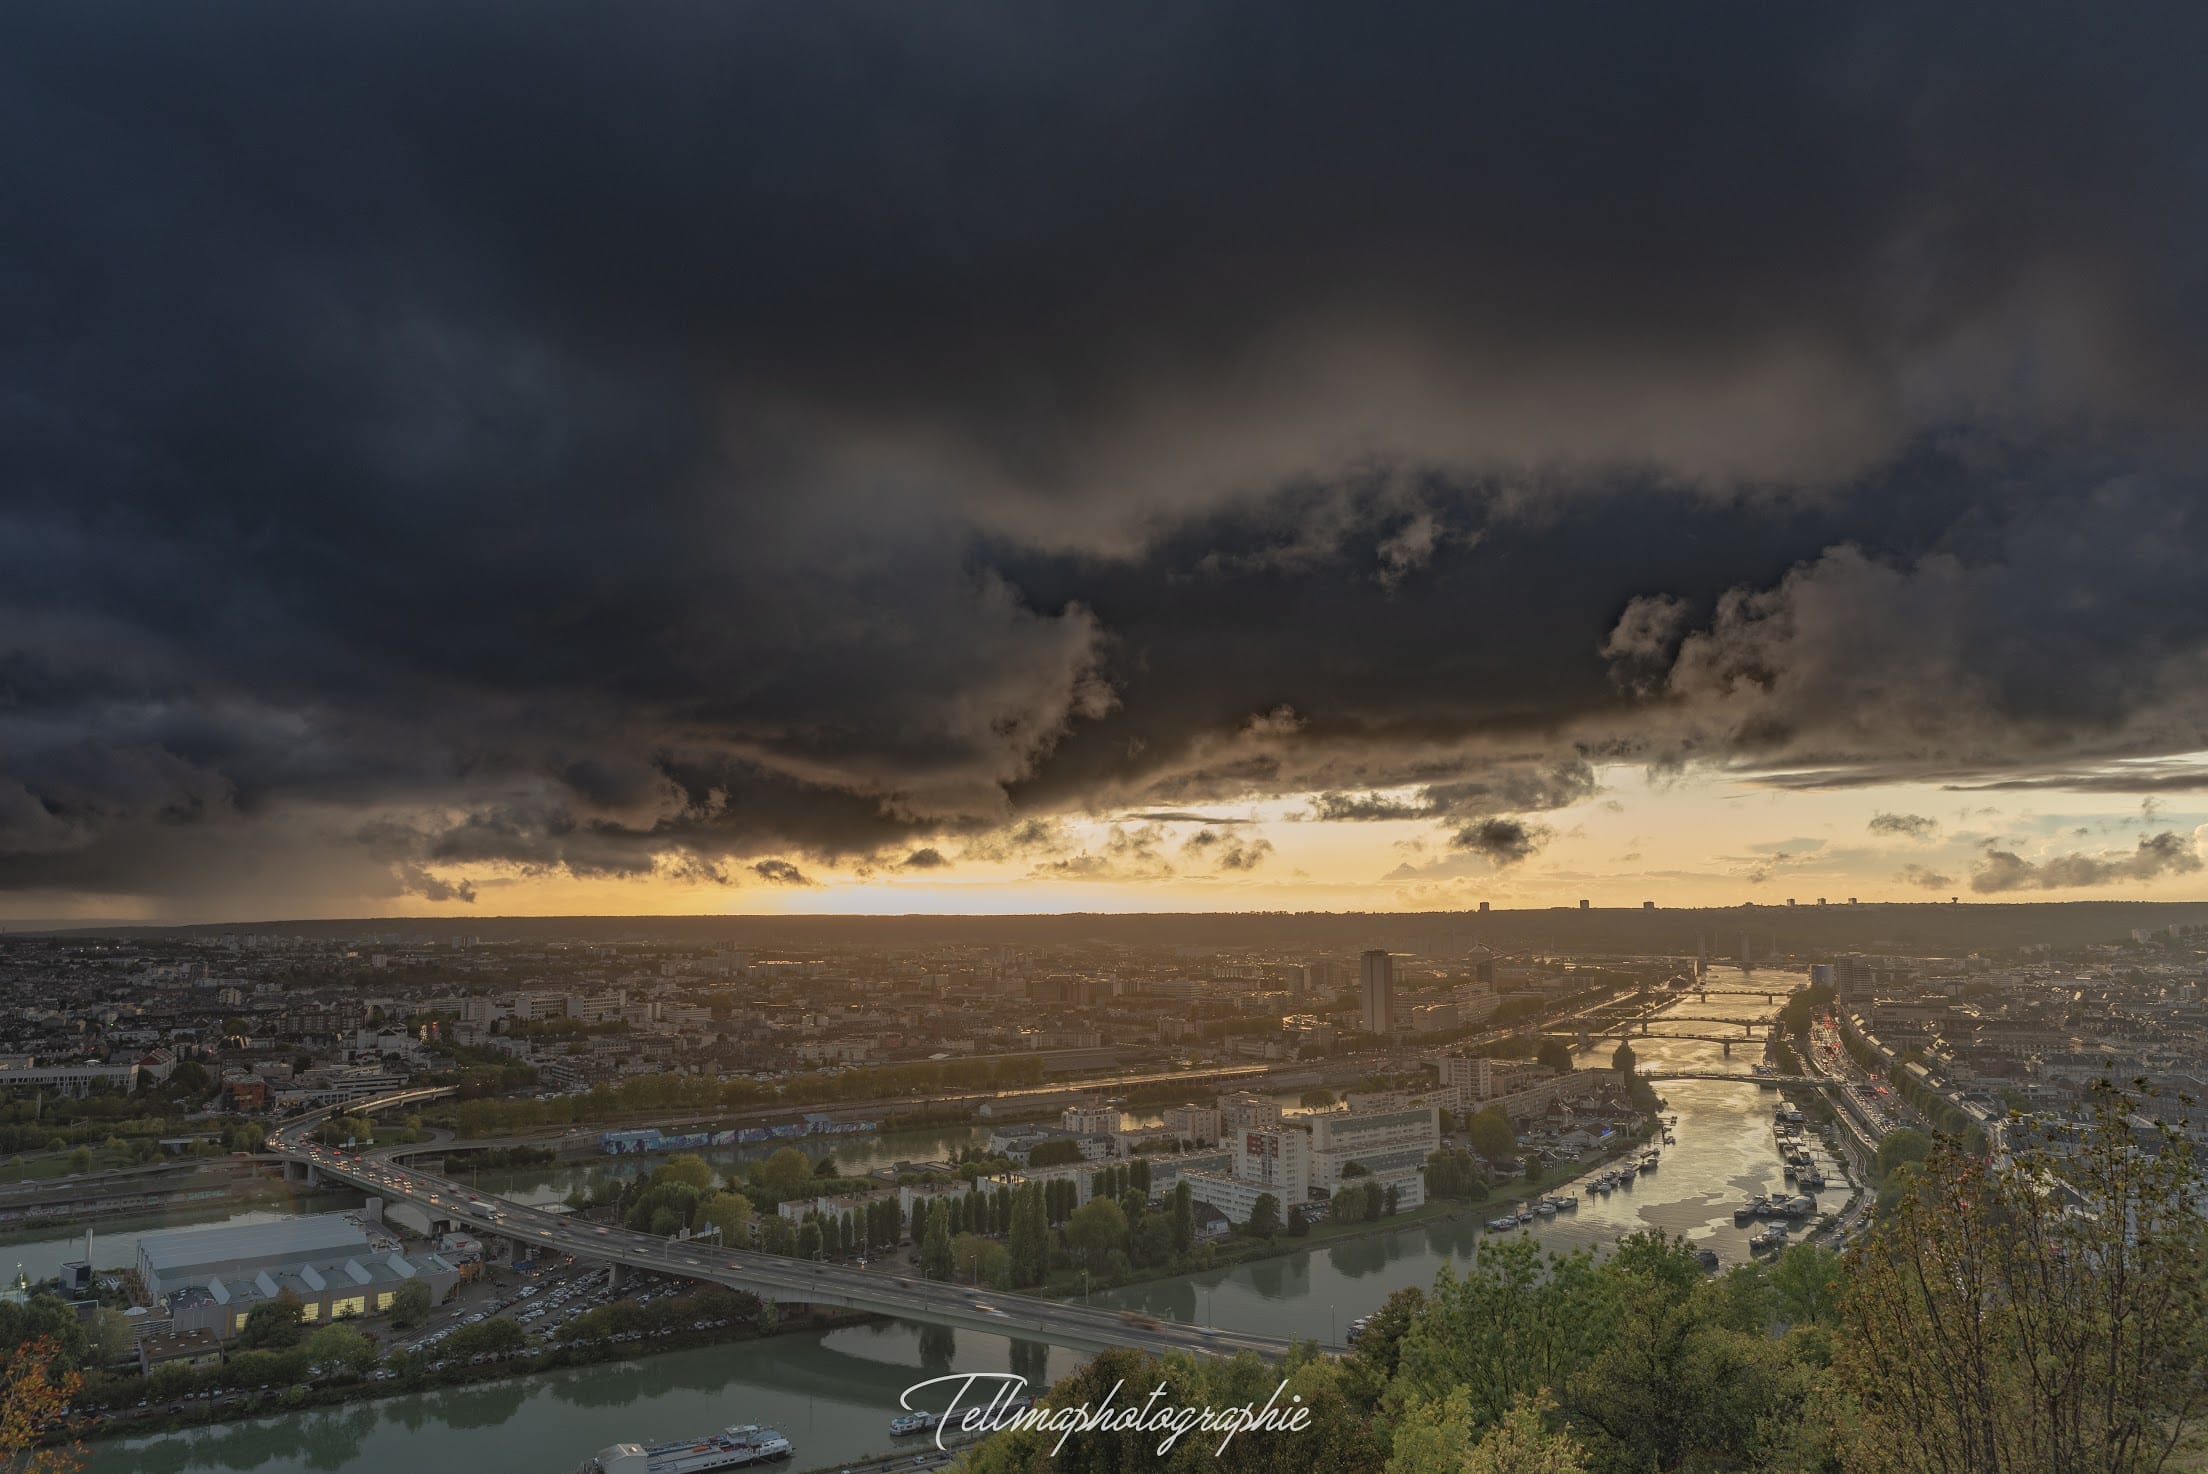 Ambiance orageuse dans l’agglomération de Rouen (Seine Maritime) - 01/10/2019 19:00 - Photographie Tellma